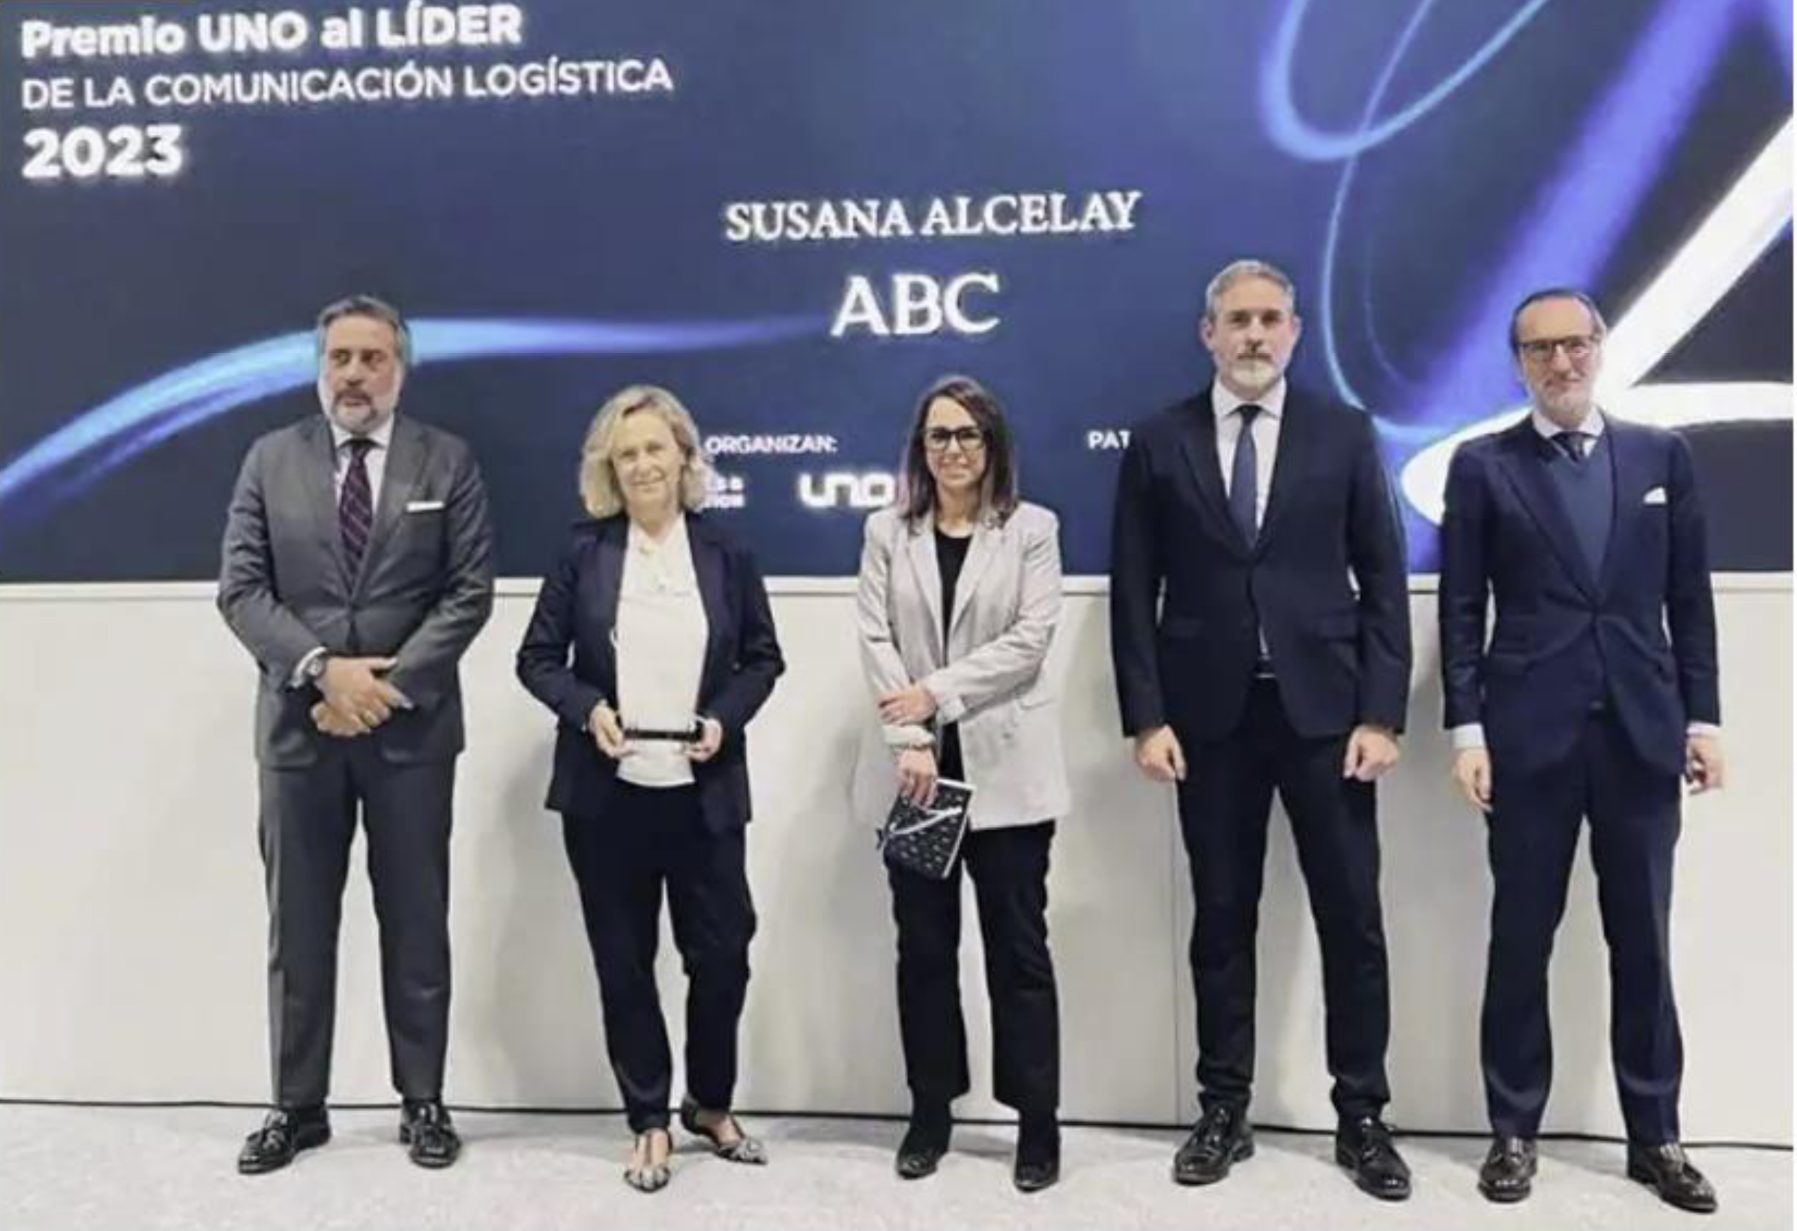 Susana Alcelay, con el premio UNO al Líder de la Comunicación Logística 2023